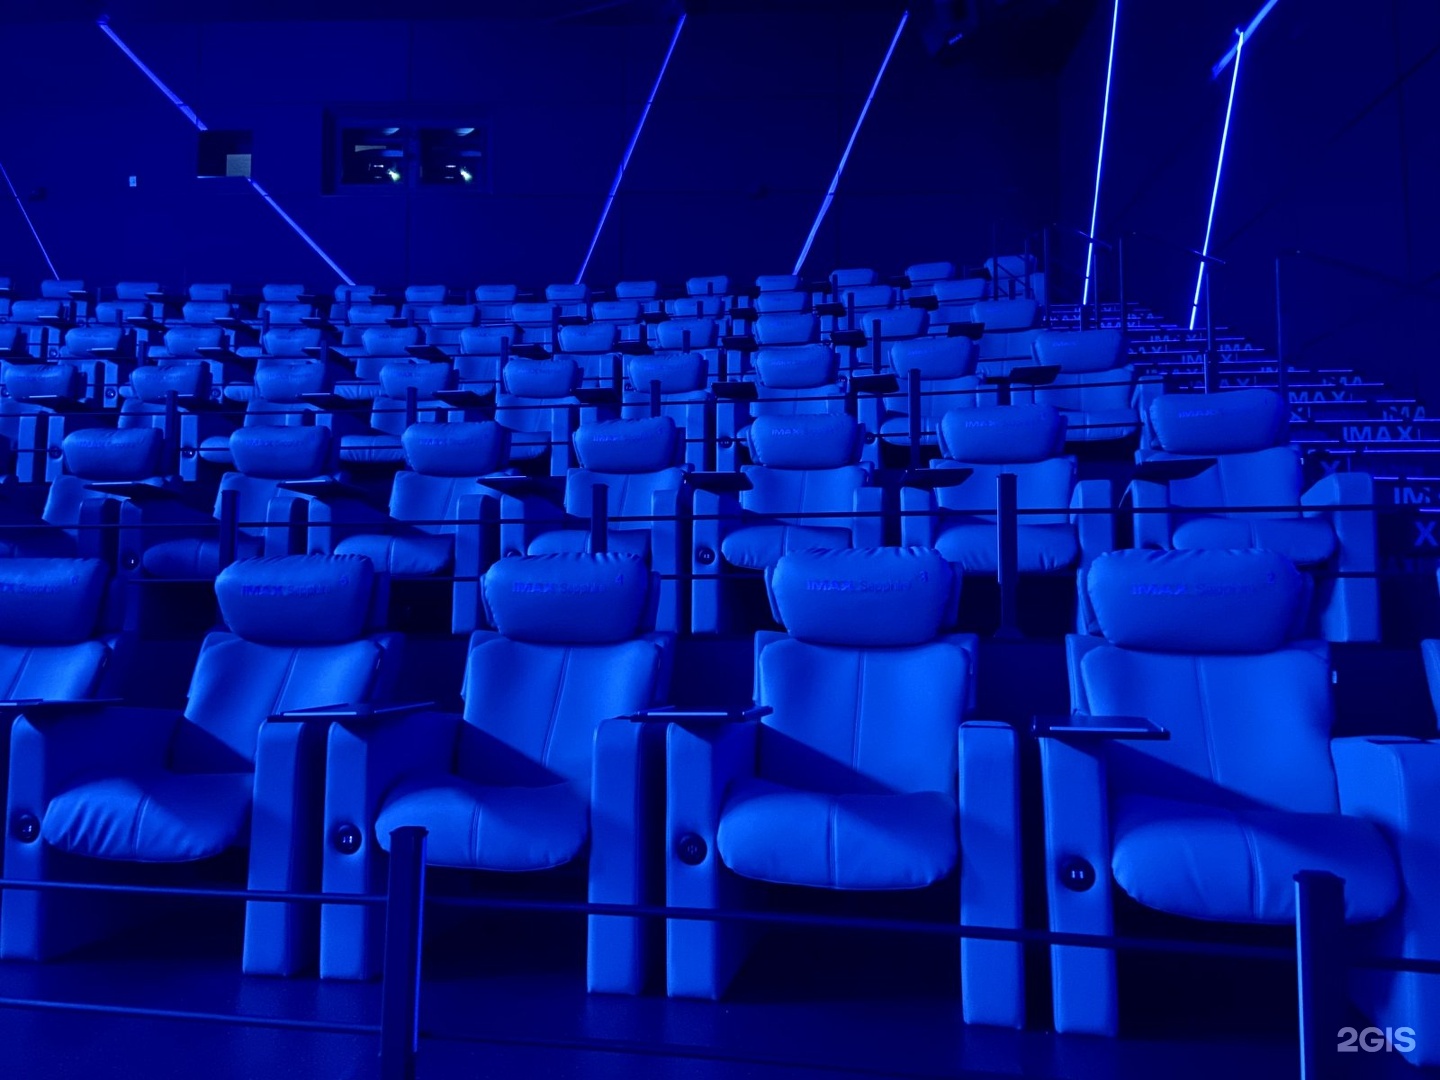 Калина молл во владивостоке кинотеатр